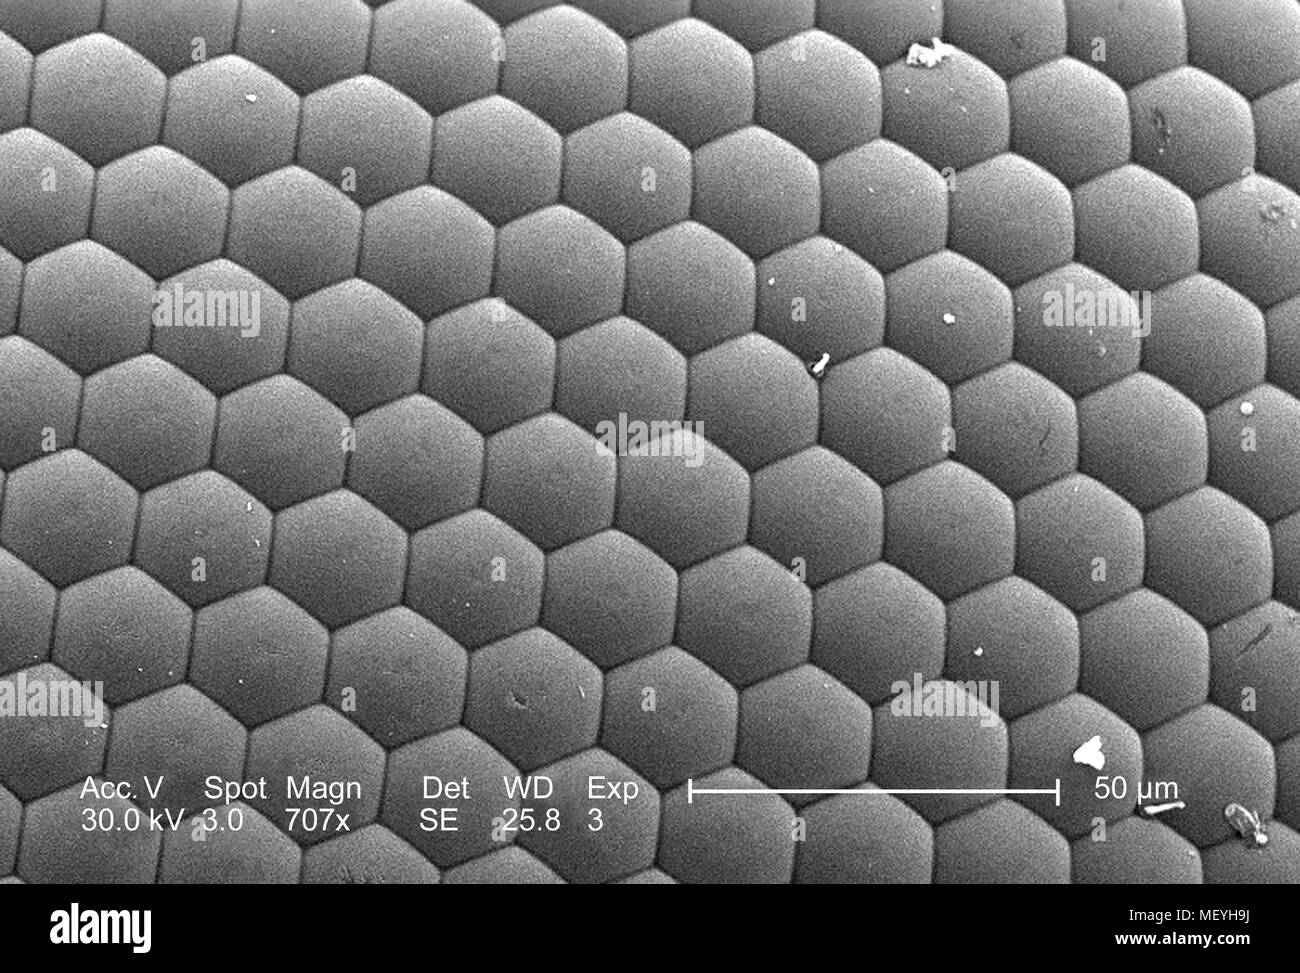 Ojo compuesto de un insecto no identificado encontrado en Decatur, Georgia, revelado en 707x magnificada análisis microscópico de electrones (SEM) de imagen, 2005. Imagen cortesía de los Centros para el Control de Enfermedades (CDC) / Janice Haney Carr. () Foto de stock